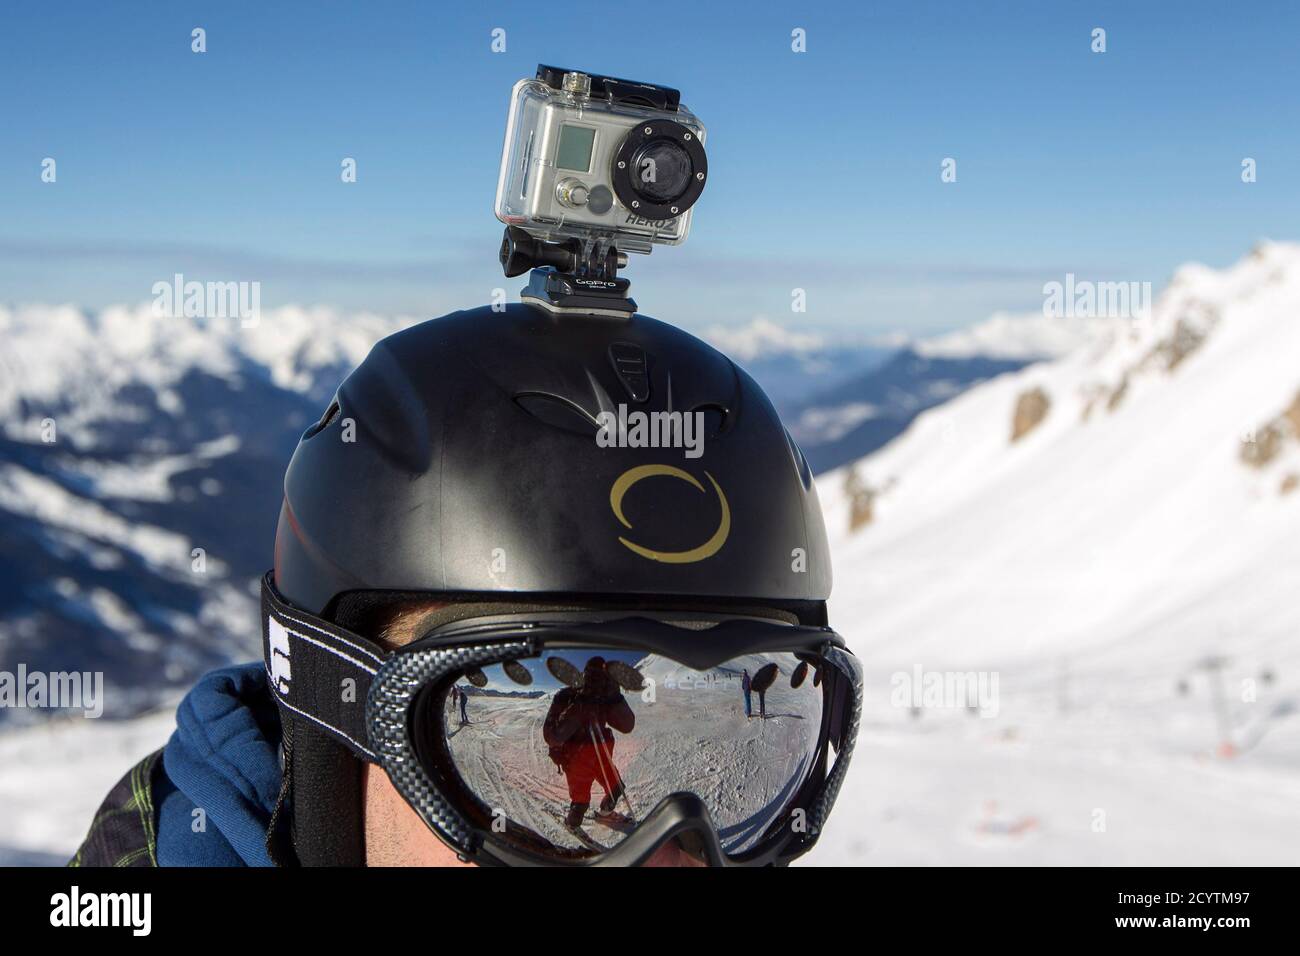 Eine GoPro Kamera wird auf ein Skifahrer Helm gesehen, als er auf den  Pisten im Skigebiet von Méribel, Französische Alpen, 7. Januar 2014 reitet.  Schumachers Frau appellierte an die Medien am Dienstag